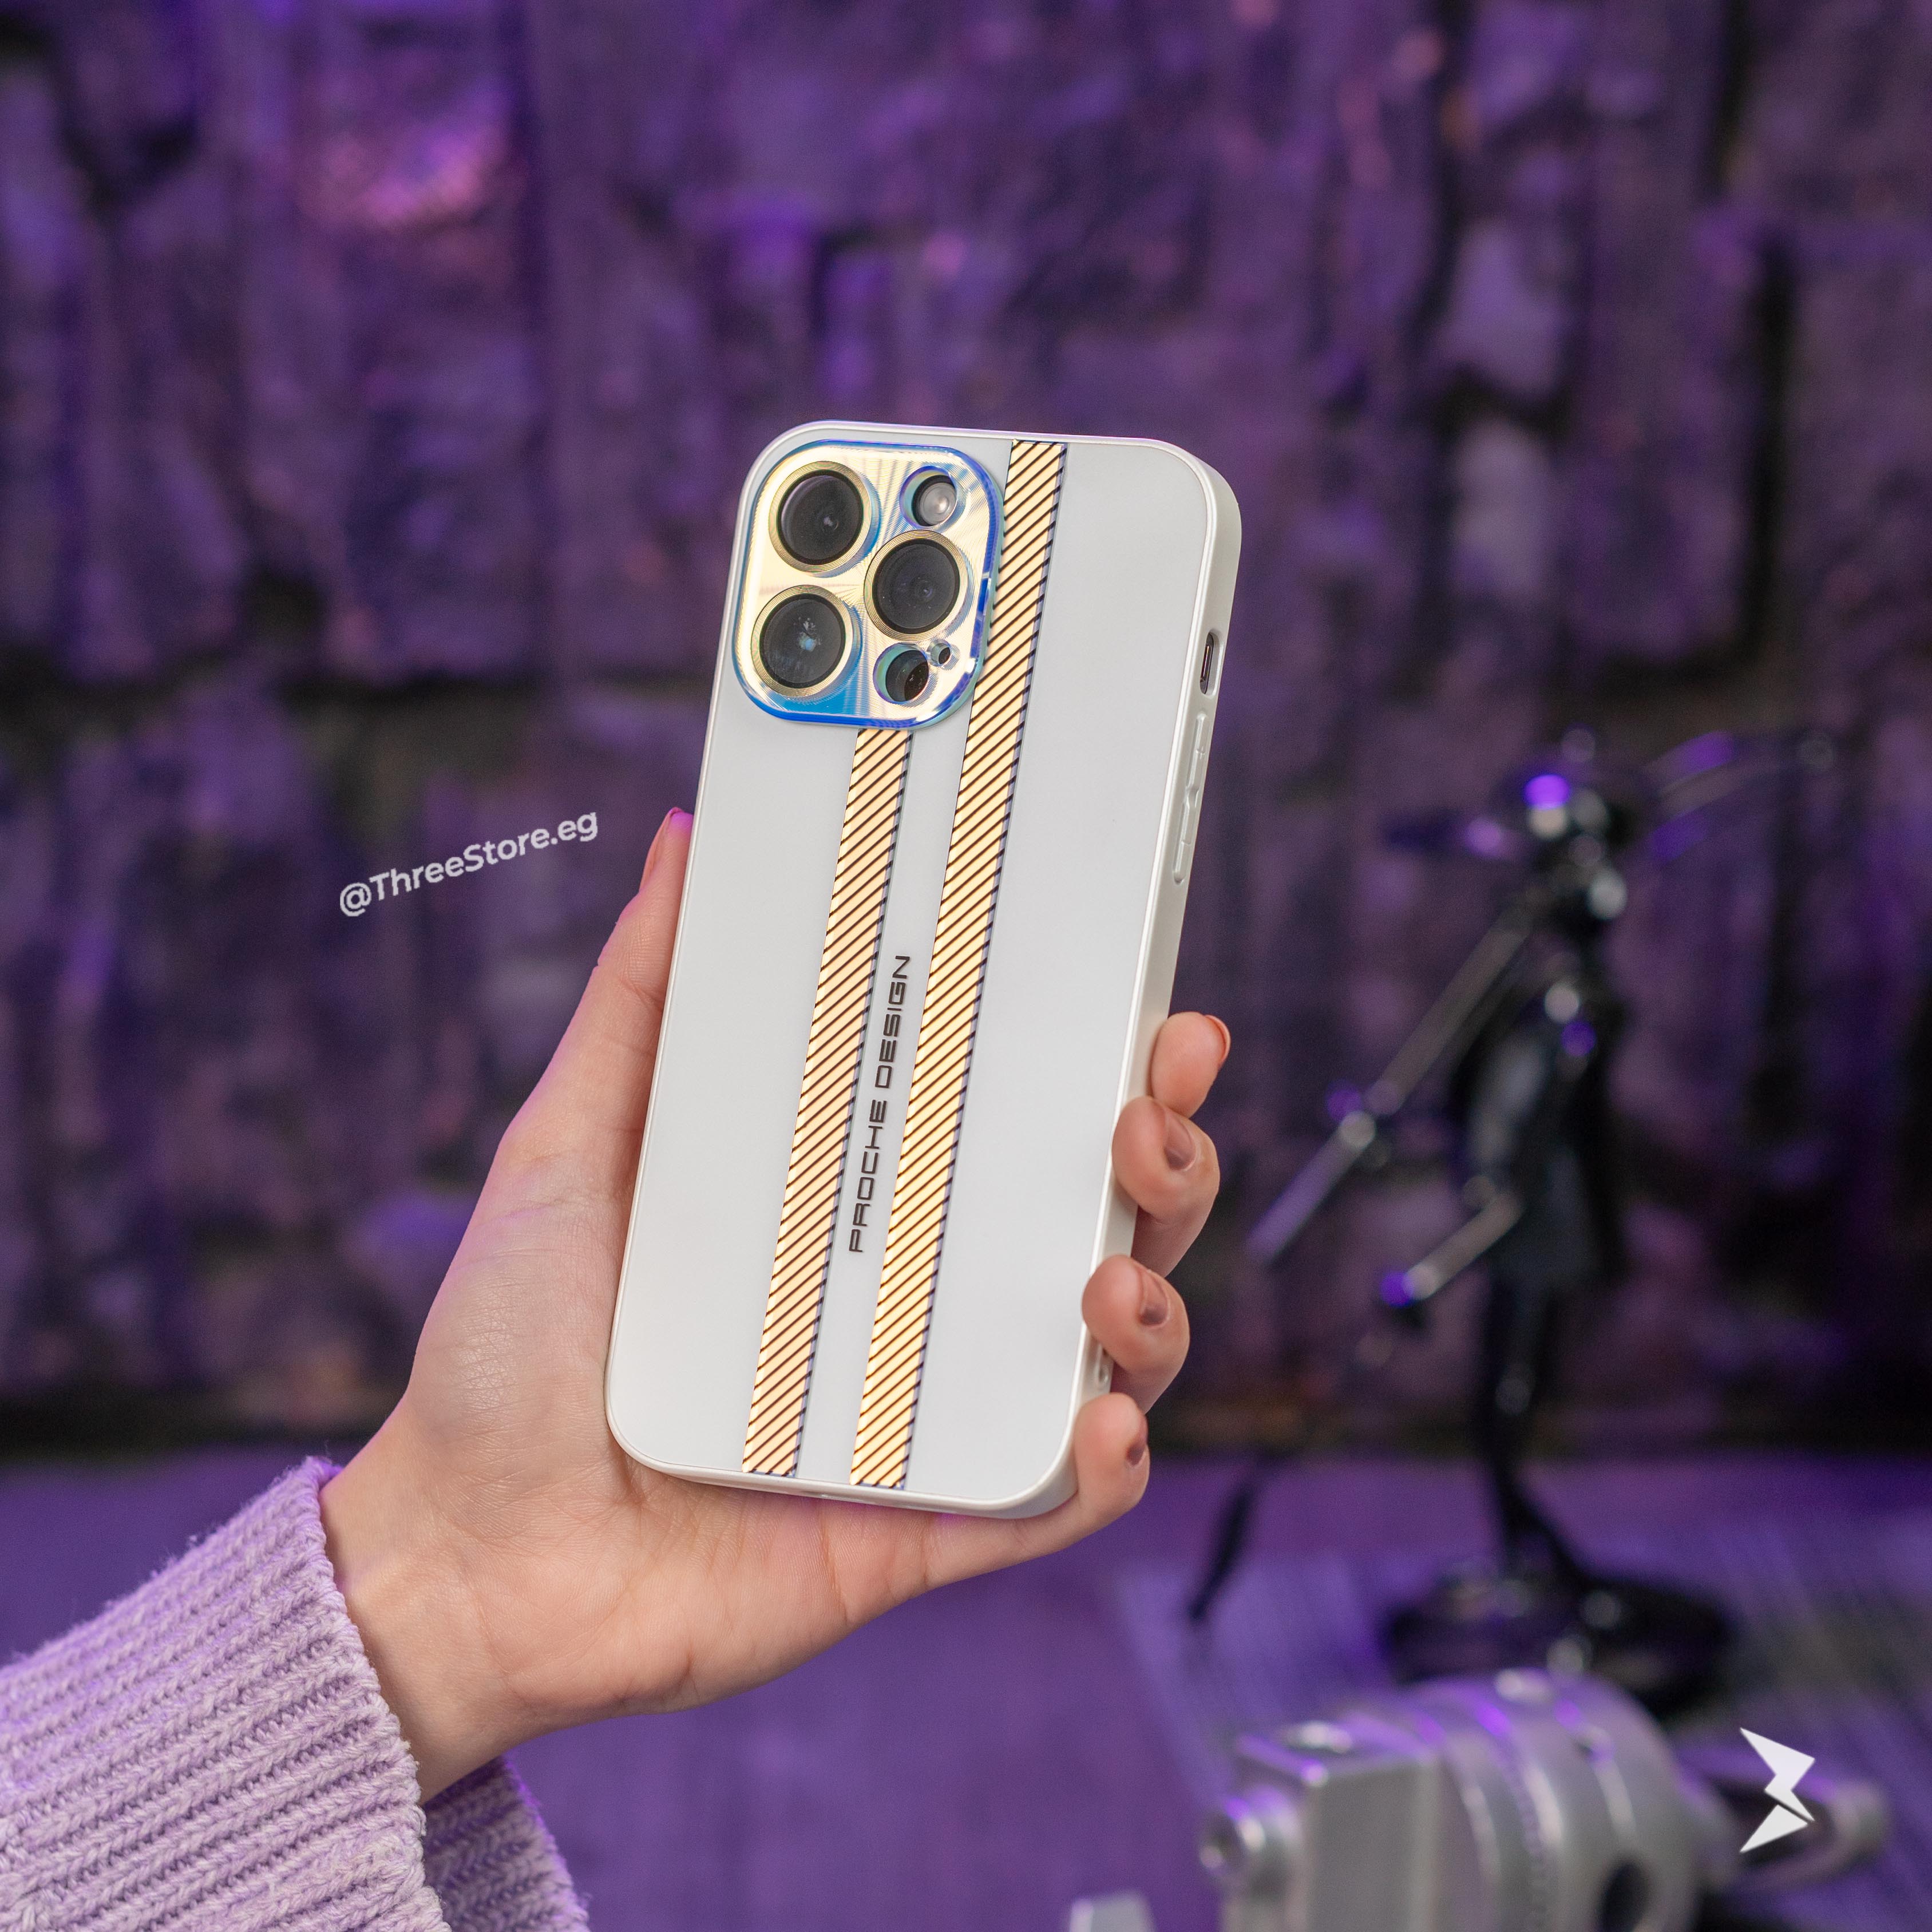 جراب بروش لهاتف iPhone 11 Pro Max، مصنوع من مواد بلاستيكية عالية الجودة